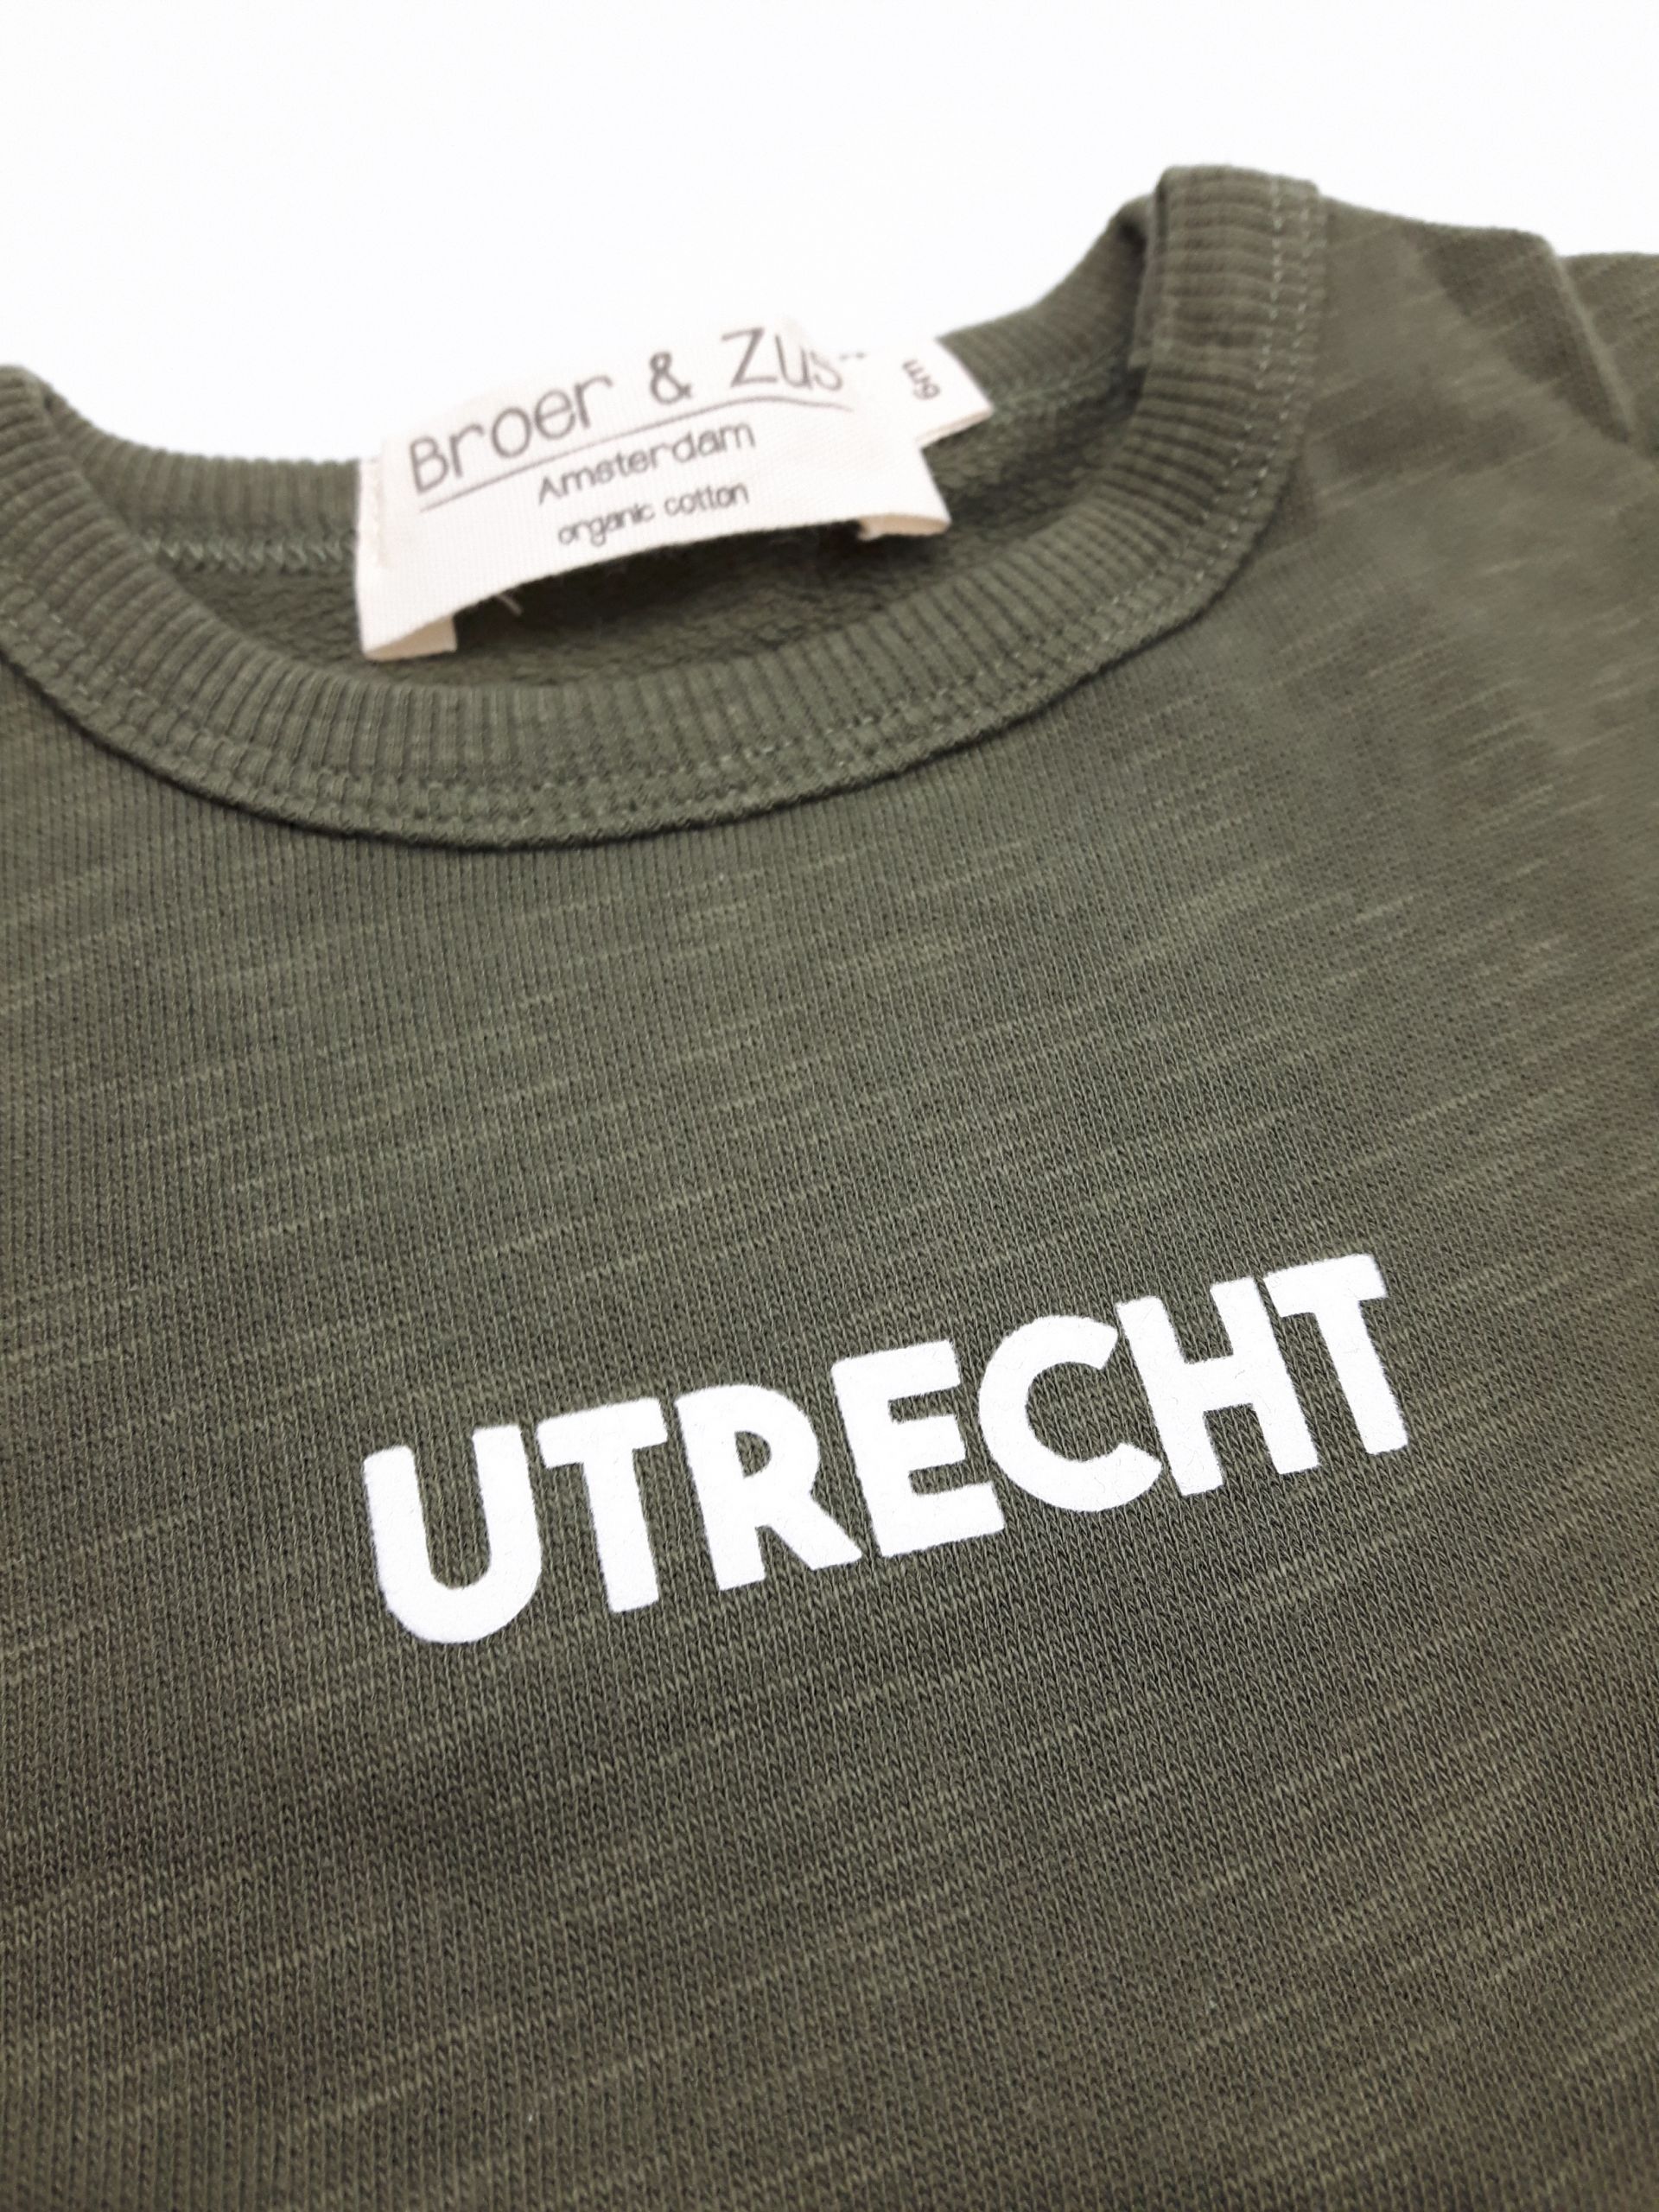 Sweater Utrecht kaki white 6 maanden